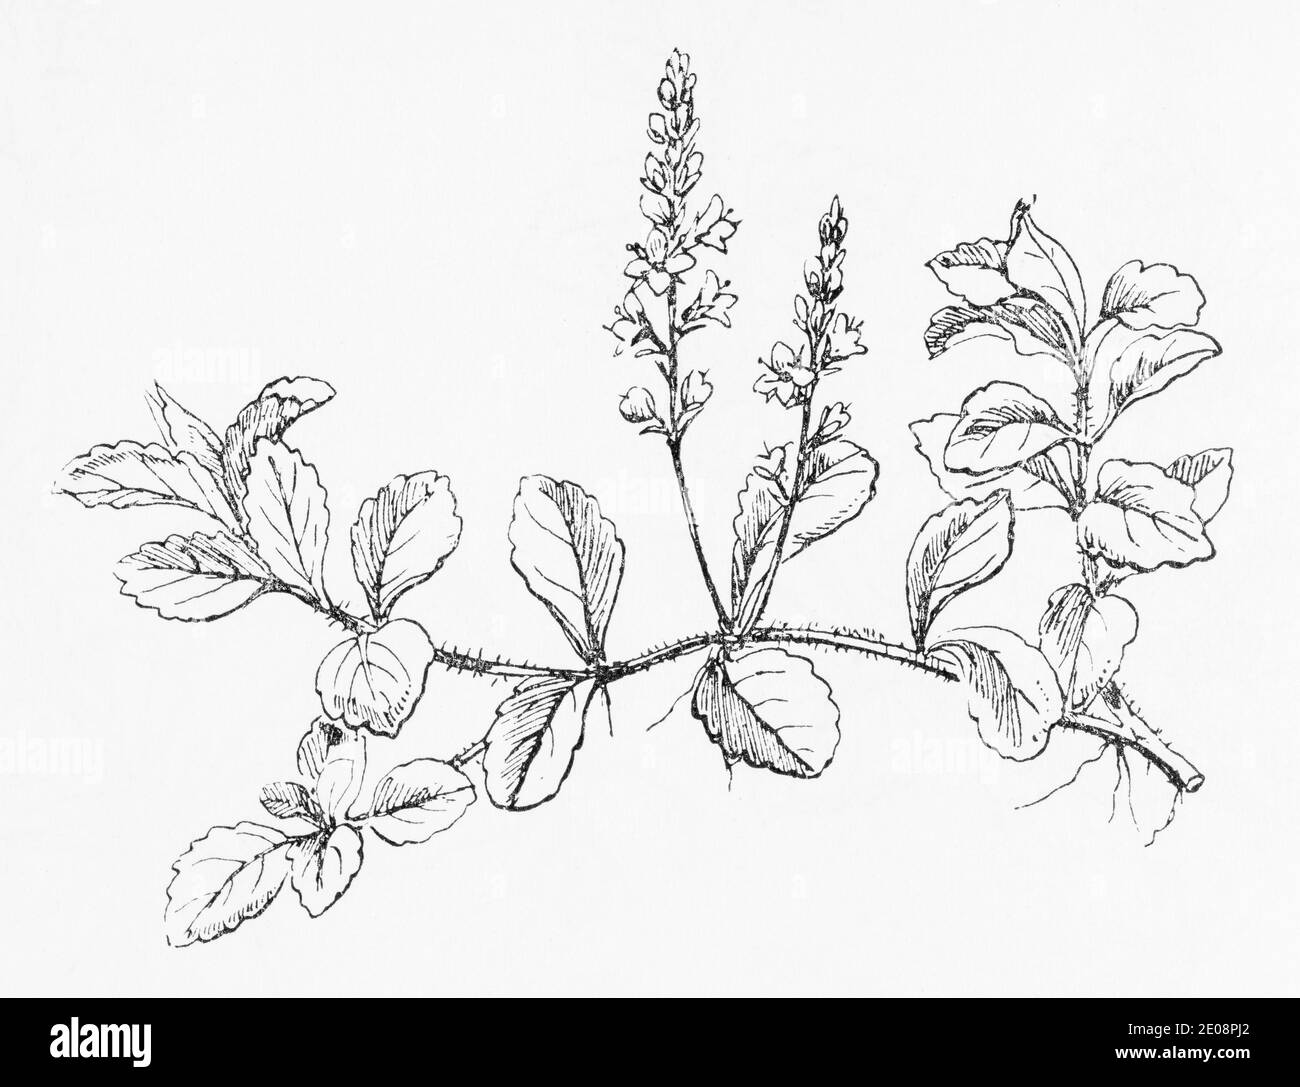 Ancienne gravure d'illustration botanique de Veronica officinalis / Common Speedwell. Plante médicinale traditionnelle. Voir Remarques Banque D'Images